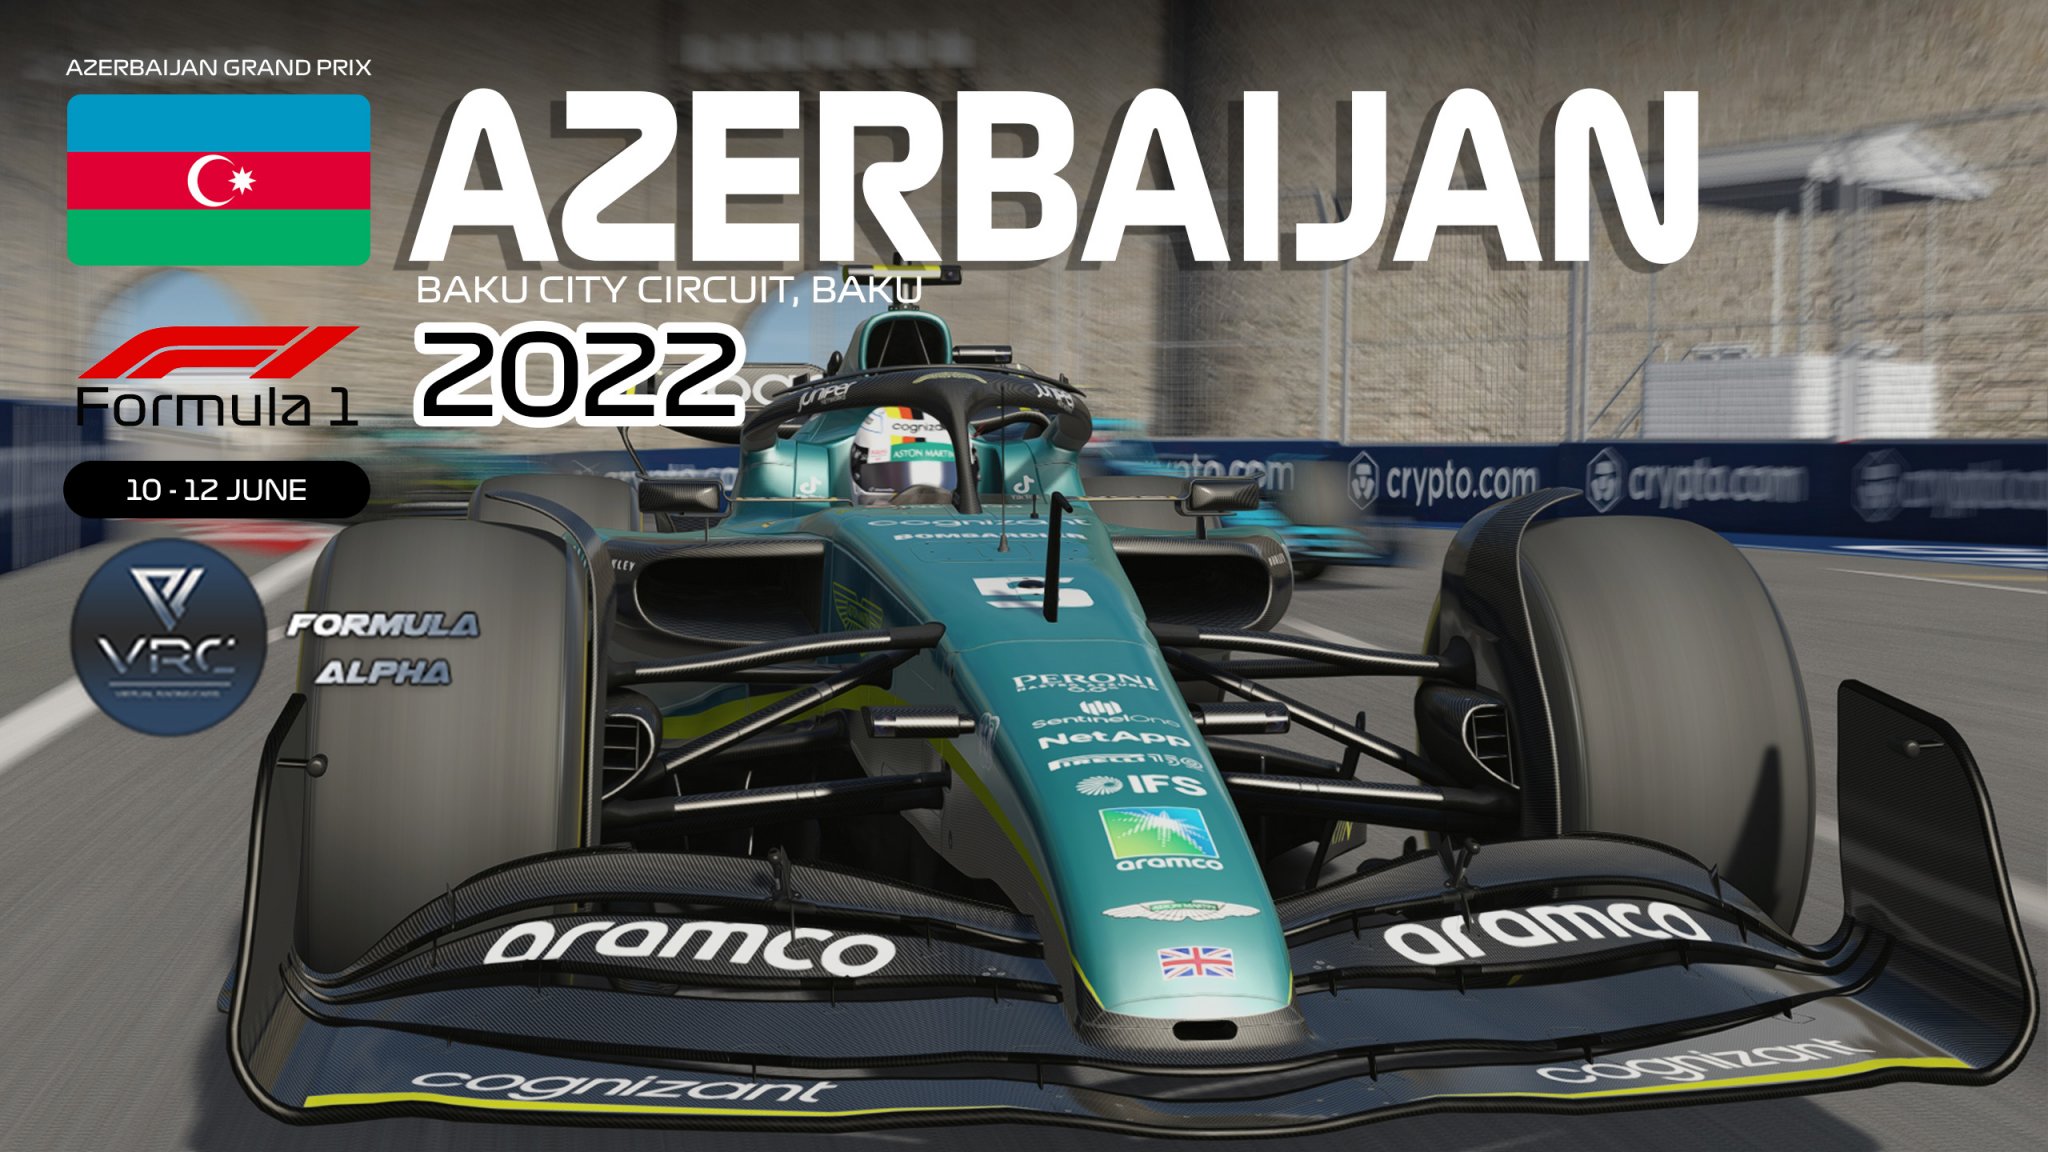 AZERBAIJAN_F1 2022 raceday_screen bg.jpg